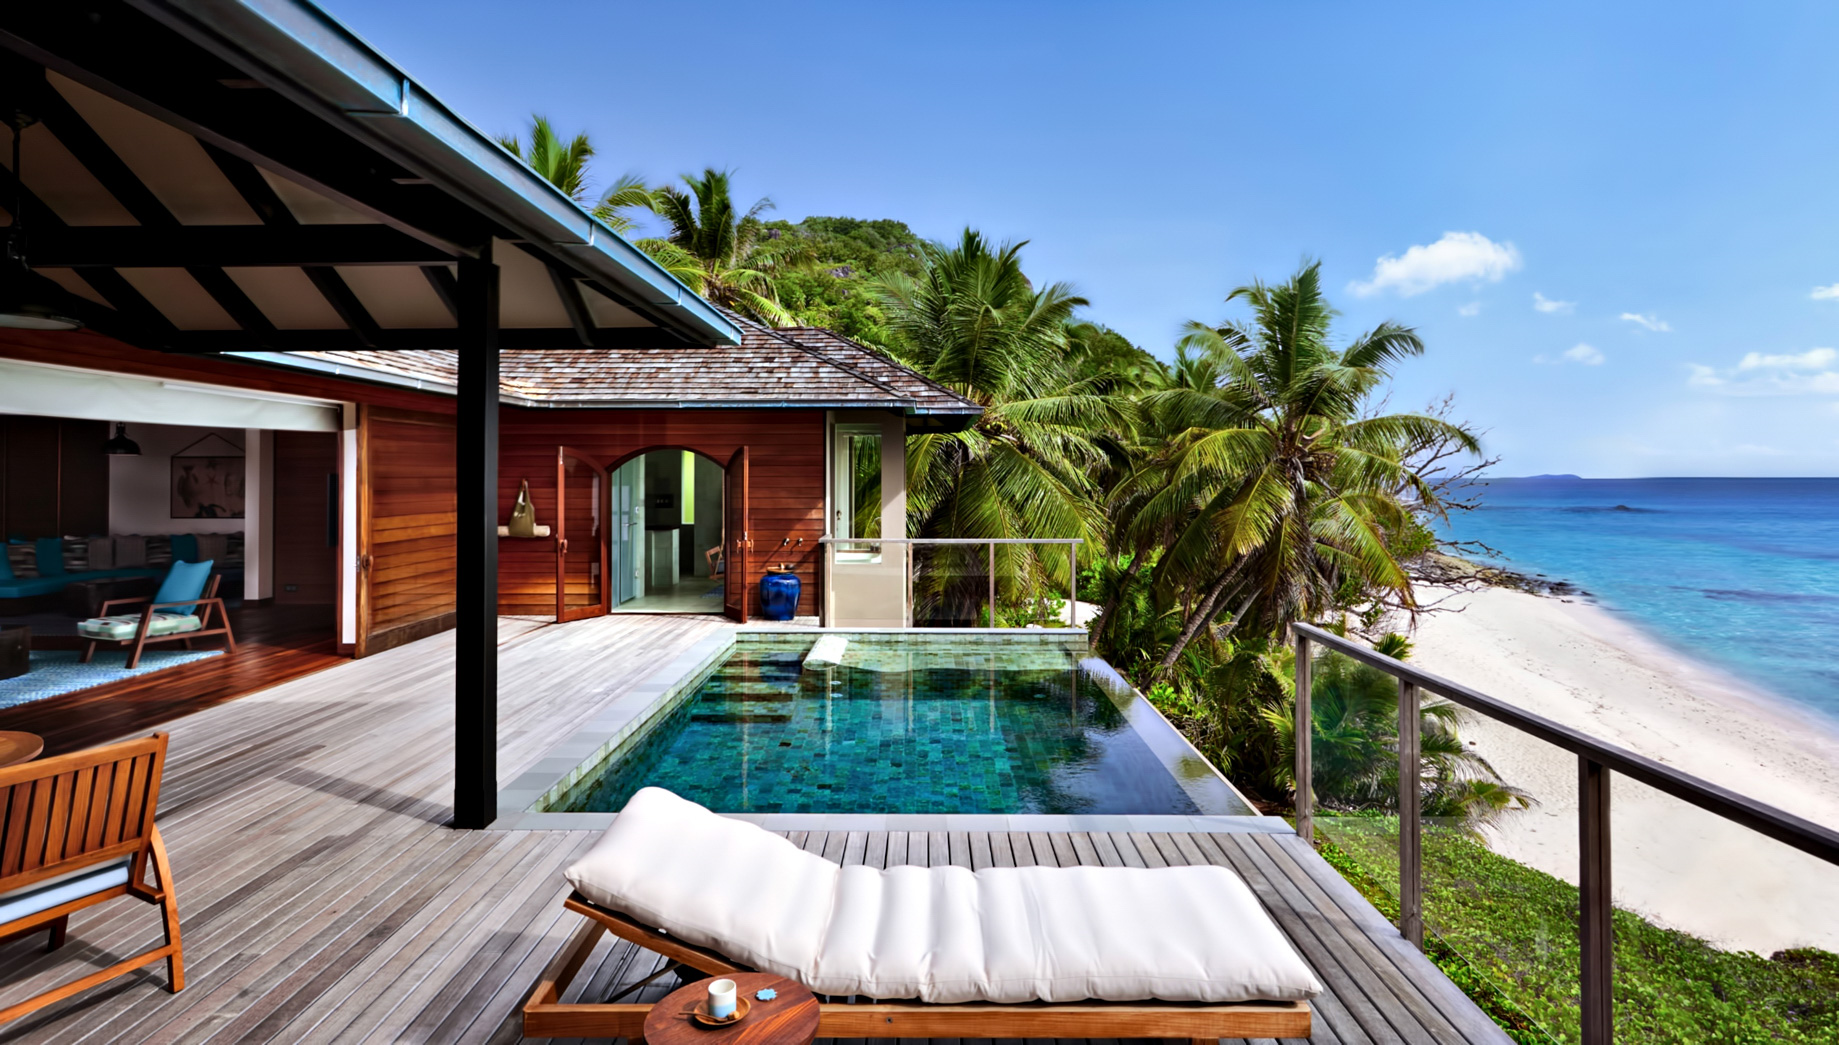 Six Senses Zil Pasyon Resort – Felicite Island, Seychelles – Signature Pool Villa Deck